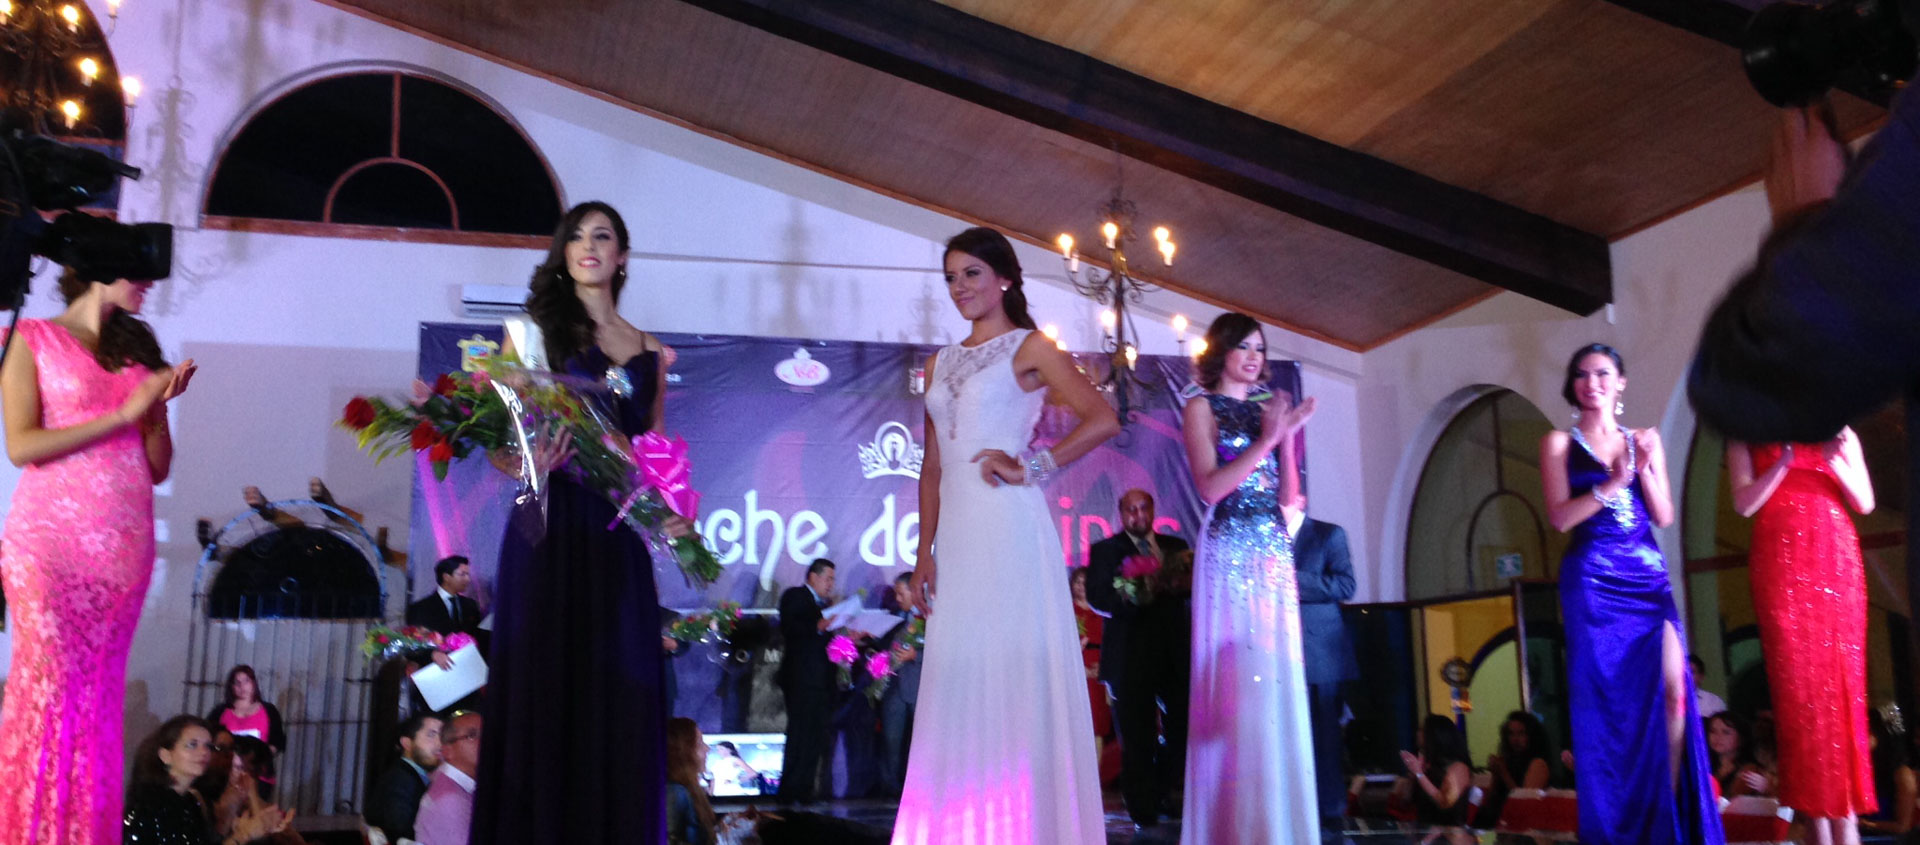 Presentación Señorita Estado de México para el certamen Nuestra Belleza México en la Hacienda Villejé.